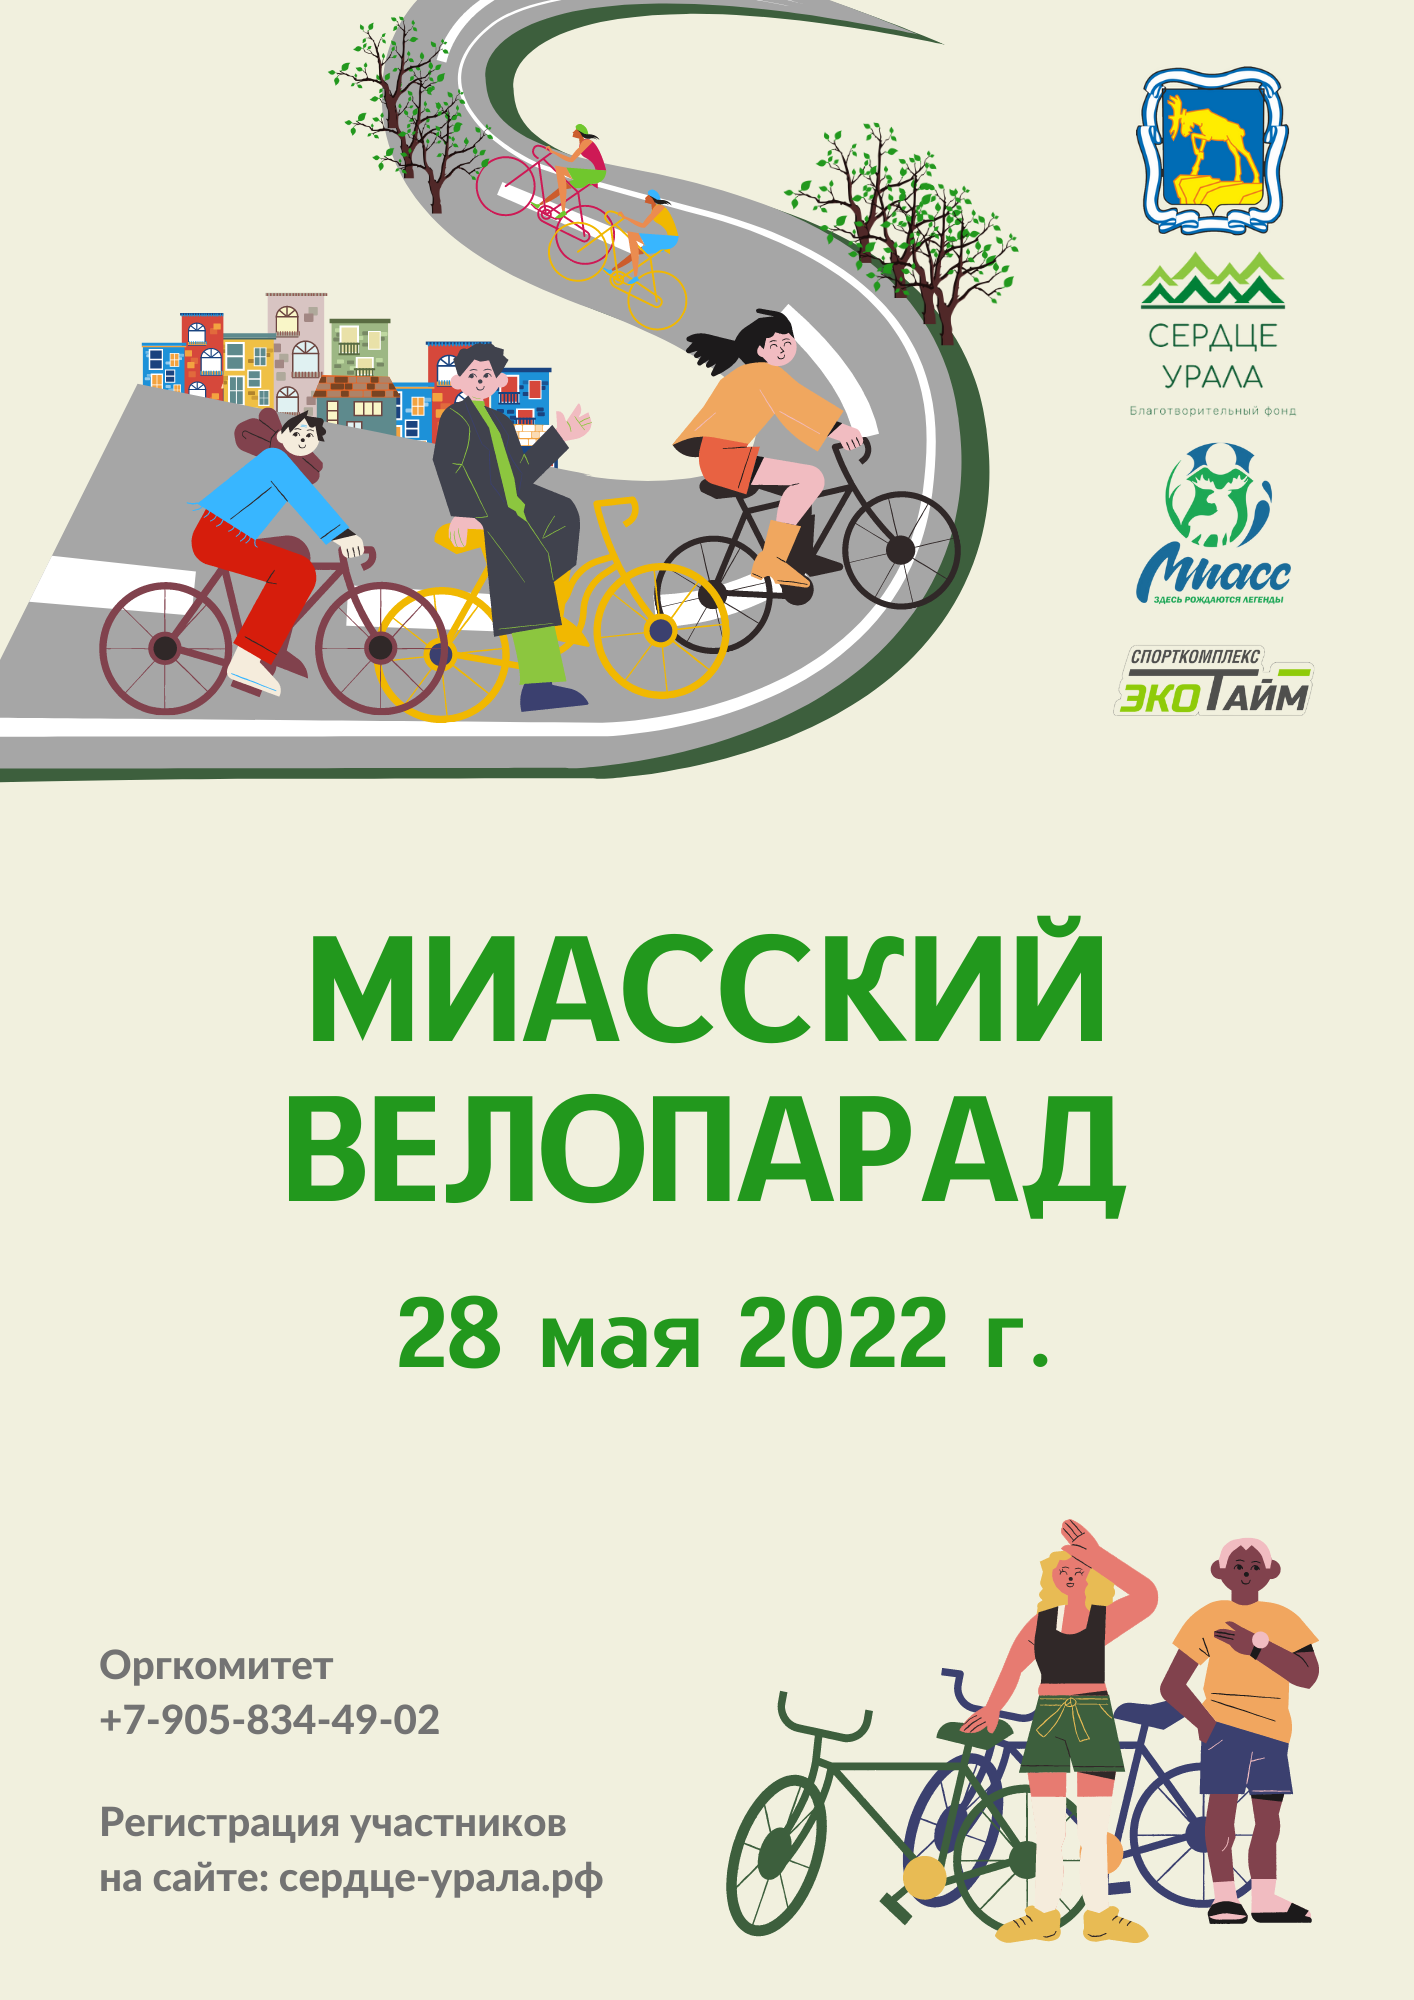 Миасский Велопарад 2022